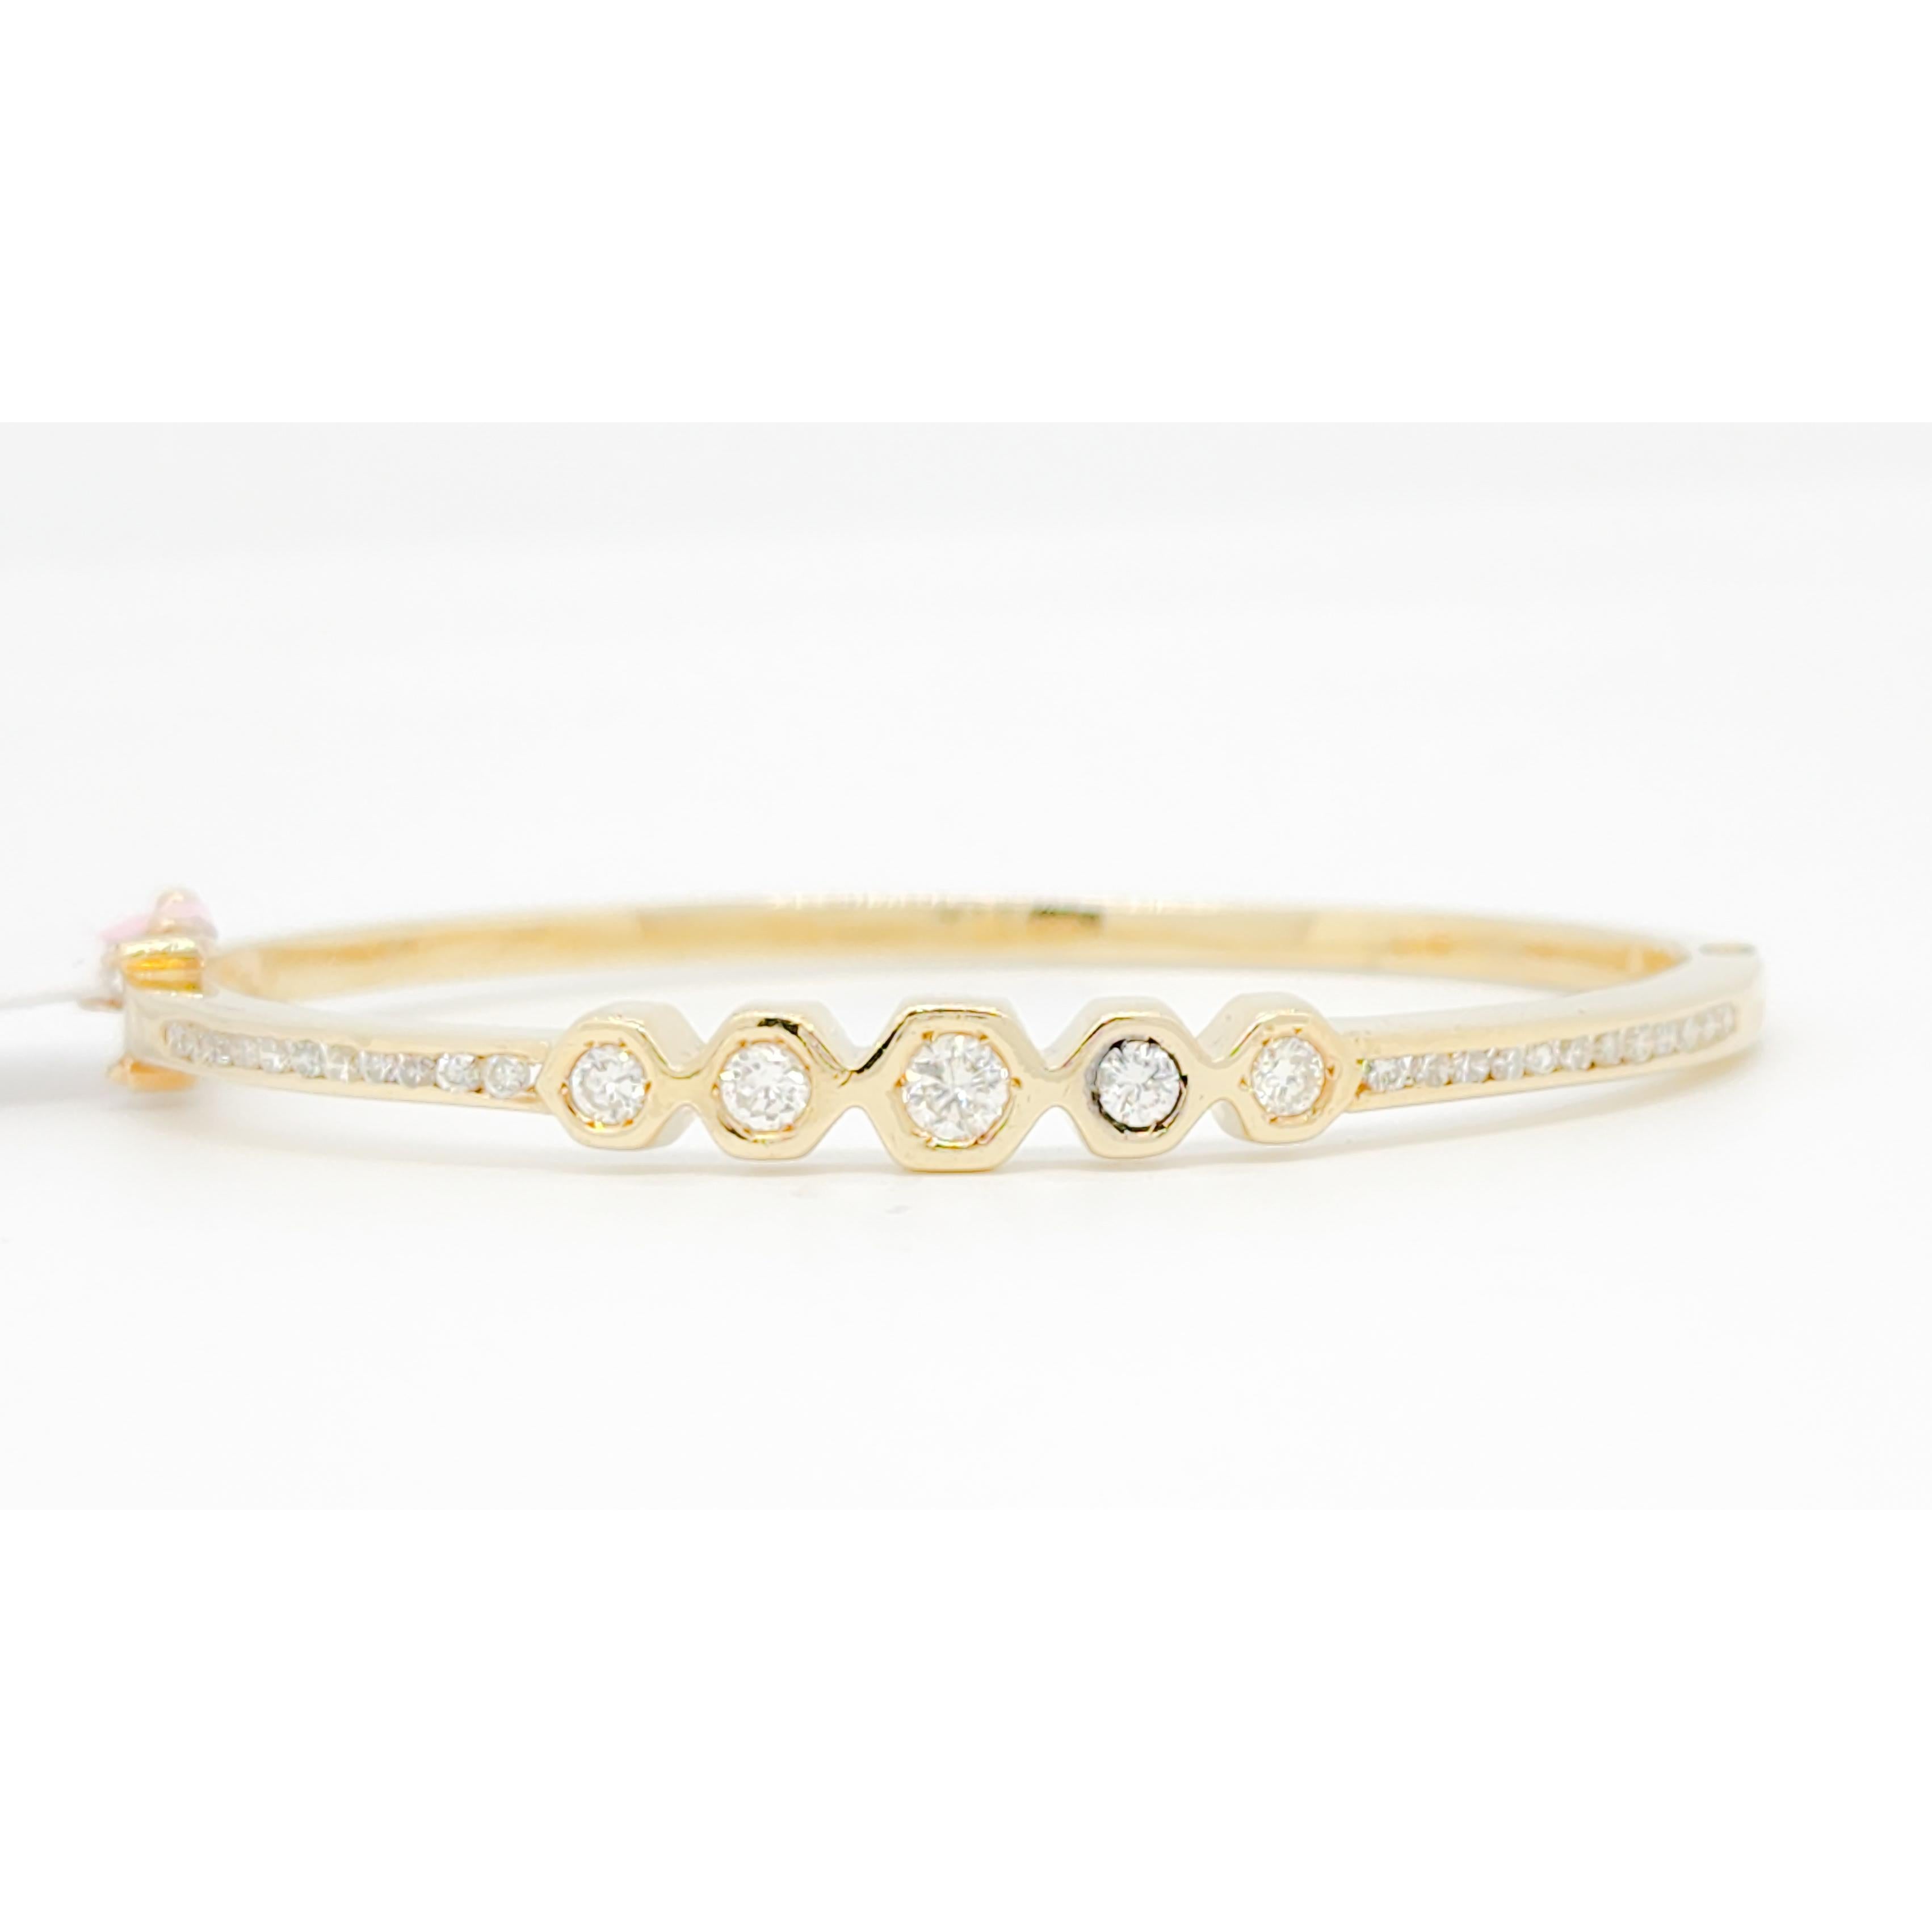 Magnifique bracelet avec 0.60 ct. de diamants blancs ronds de bonne qualité.  Fabriqué à la main en or jaune 14k.